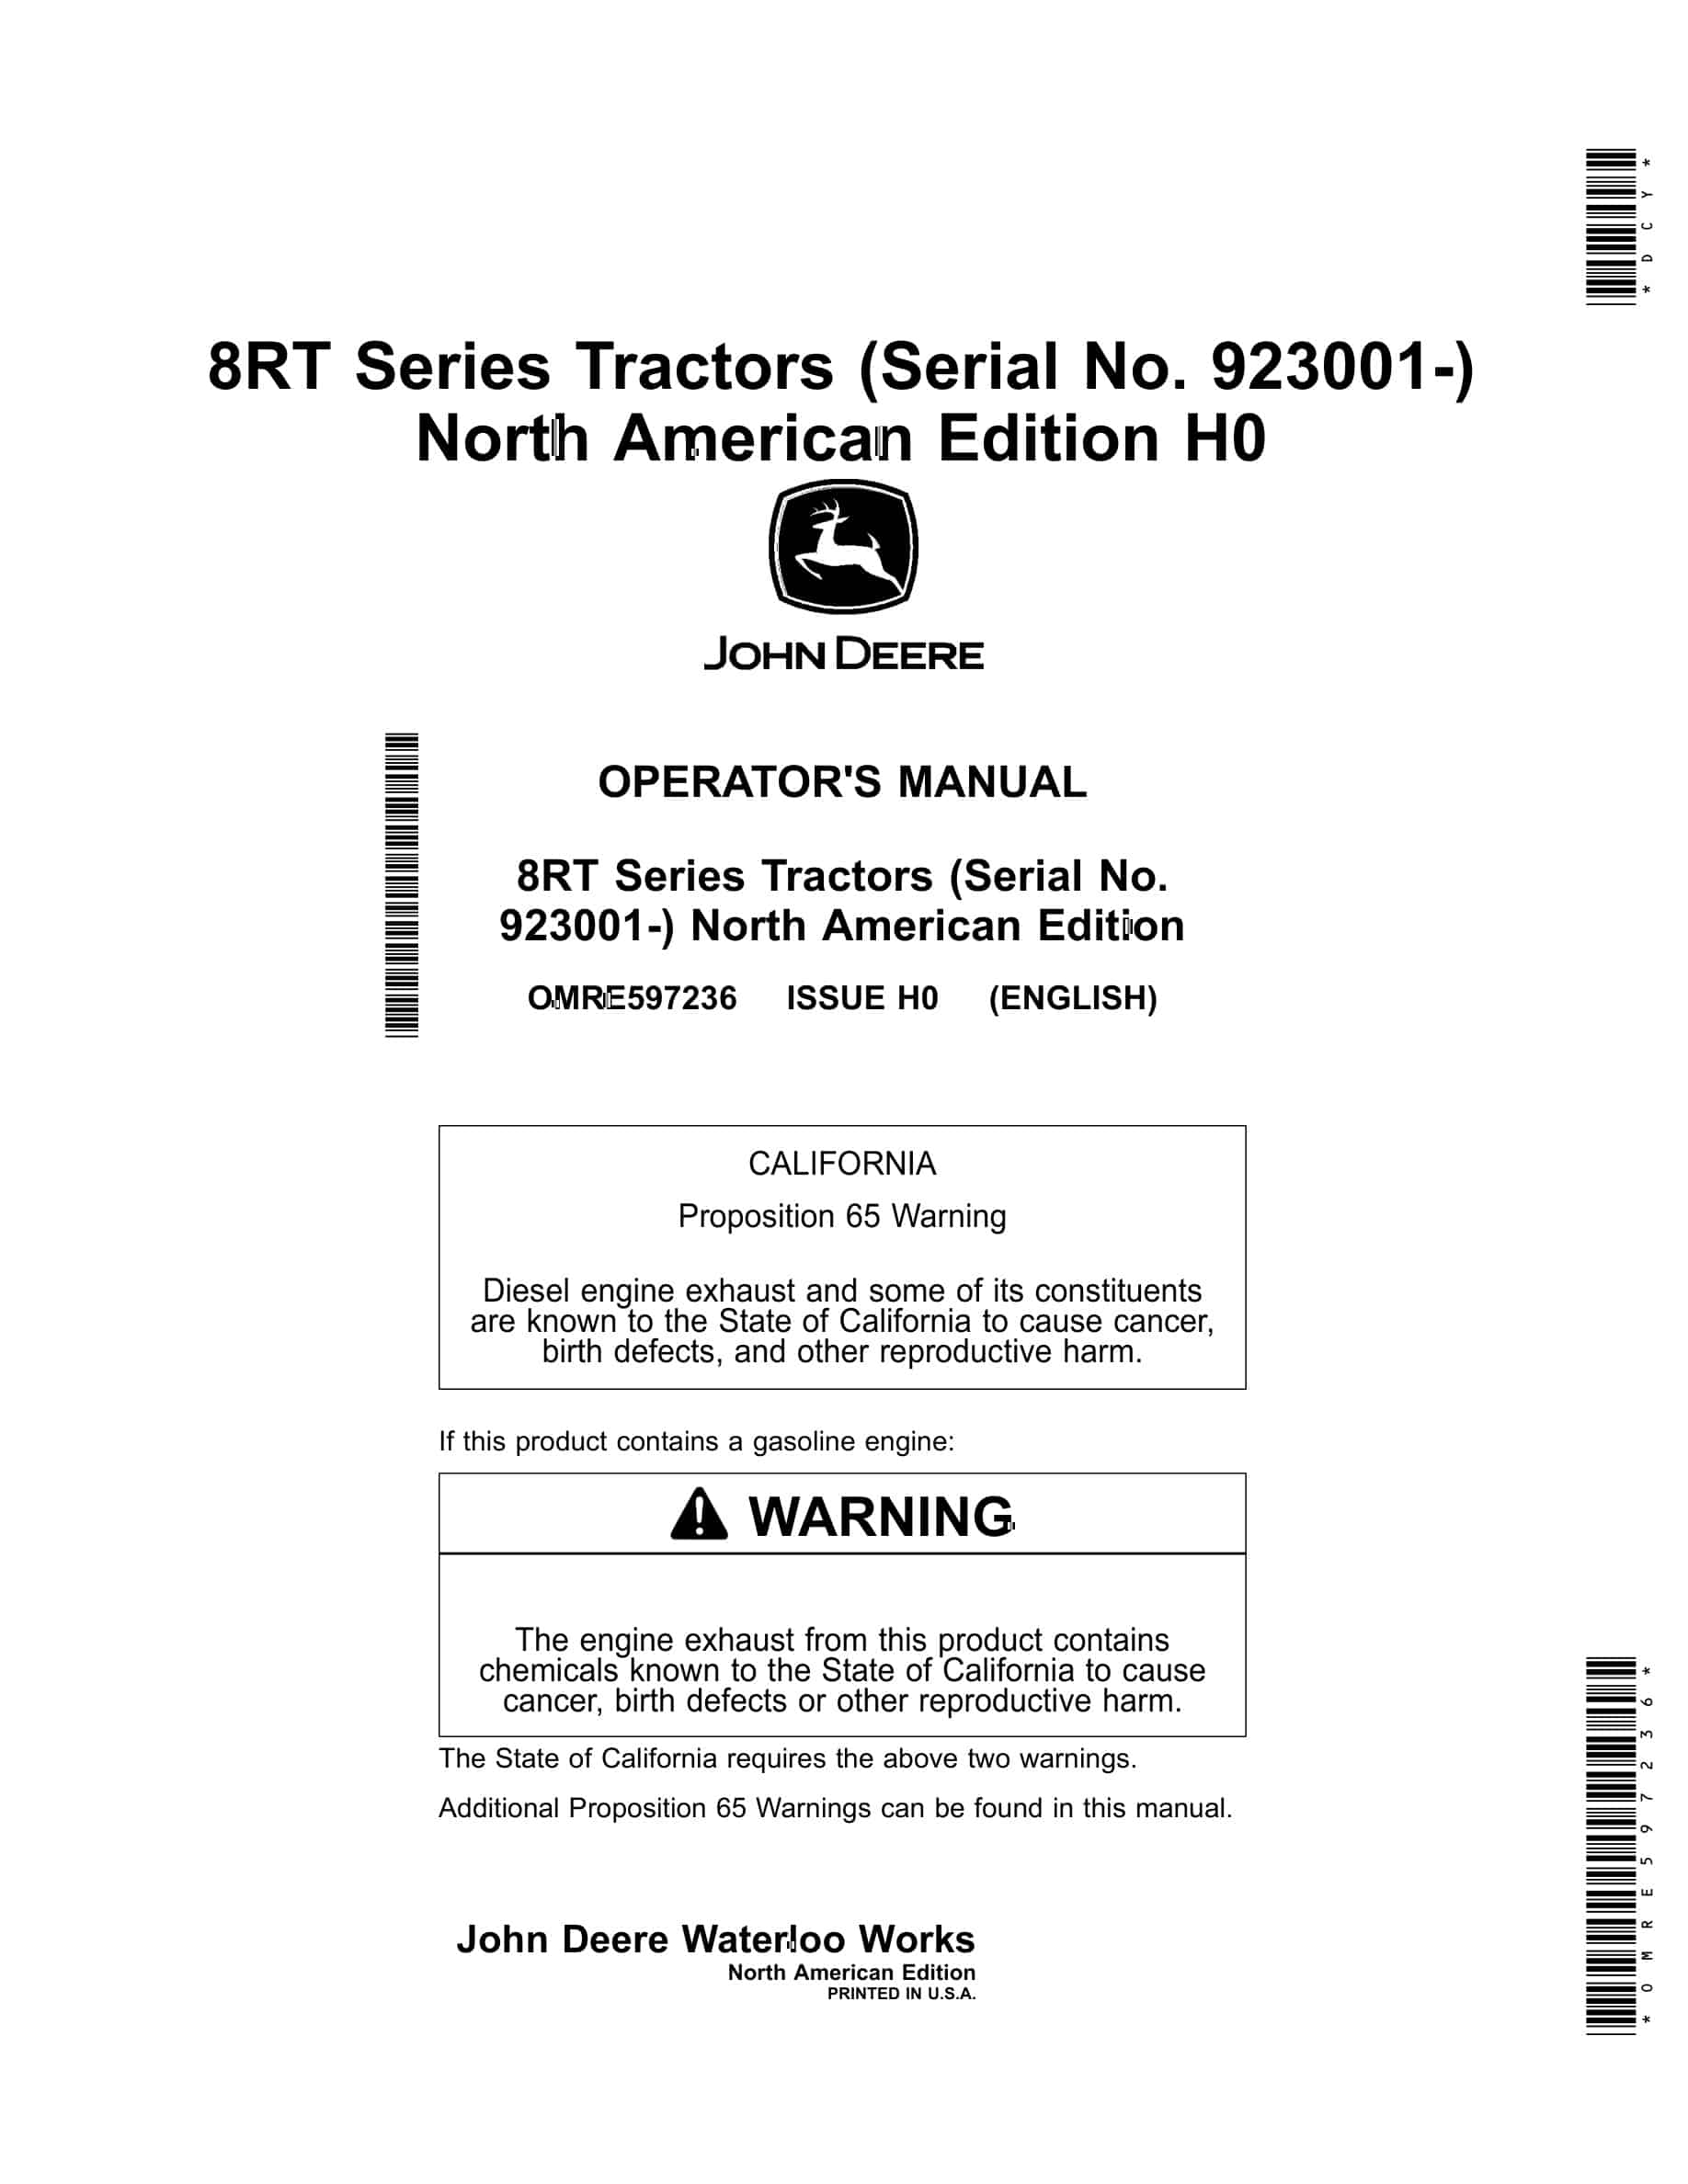 John Deere 8RT Tractor Operator Manual OMRE597236-1